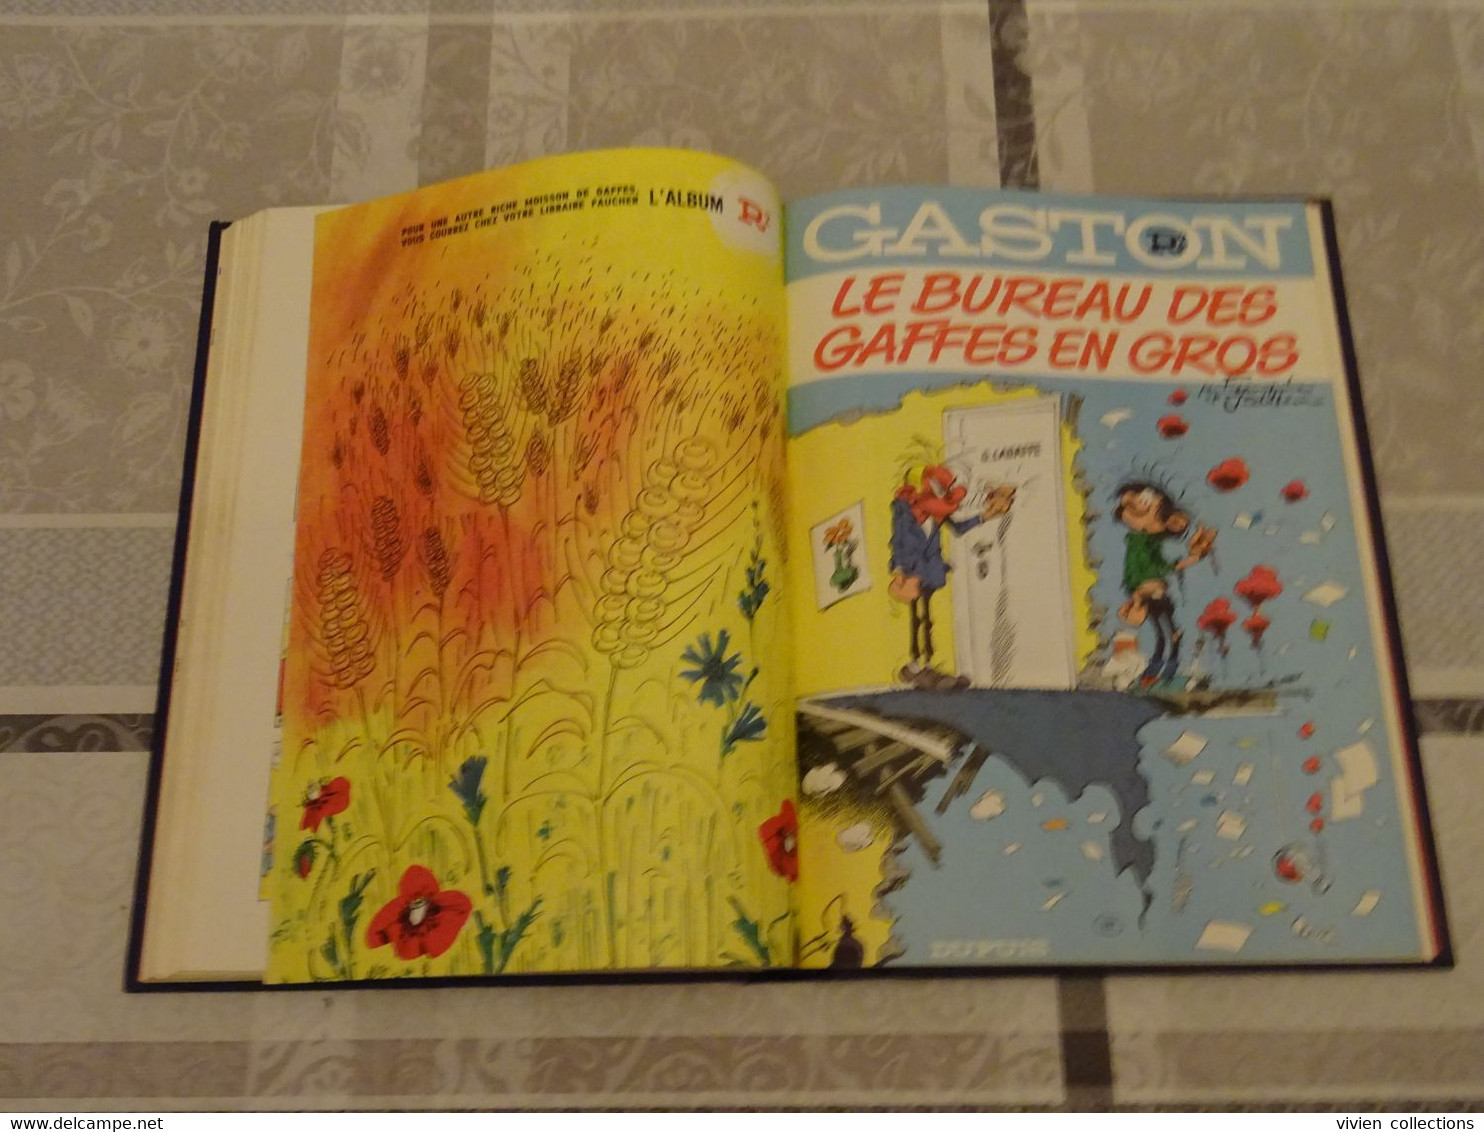 Franquin Gaston Lagaffe bd reliée N° 1 Dupuis Rombaldi en bon état 224 pages